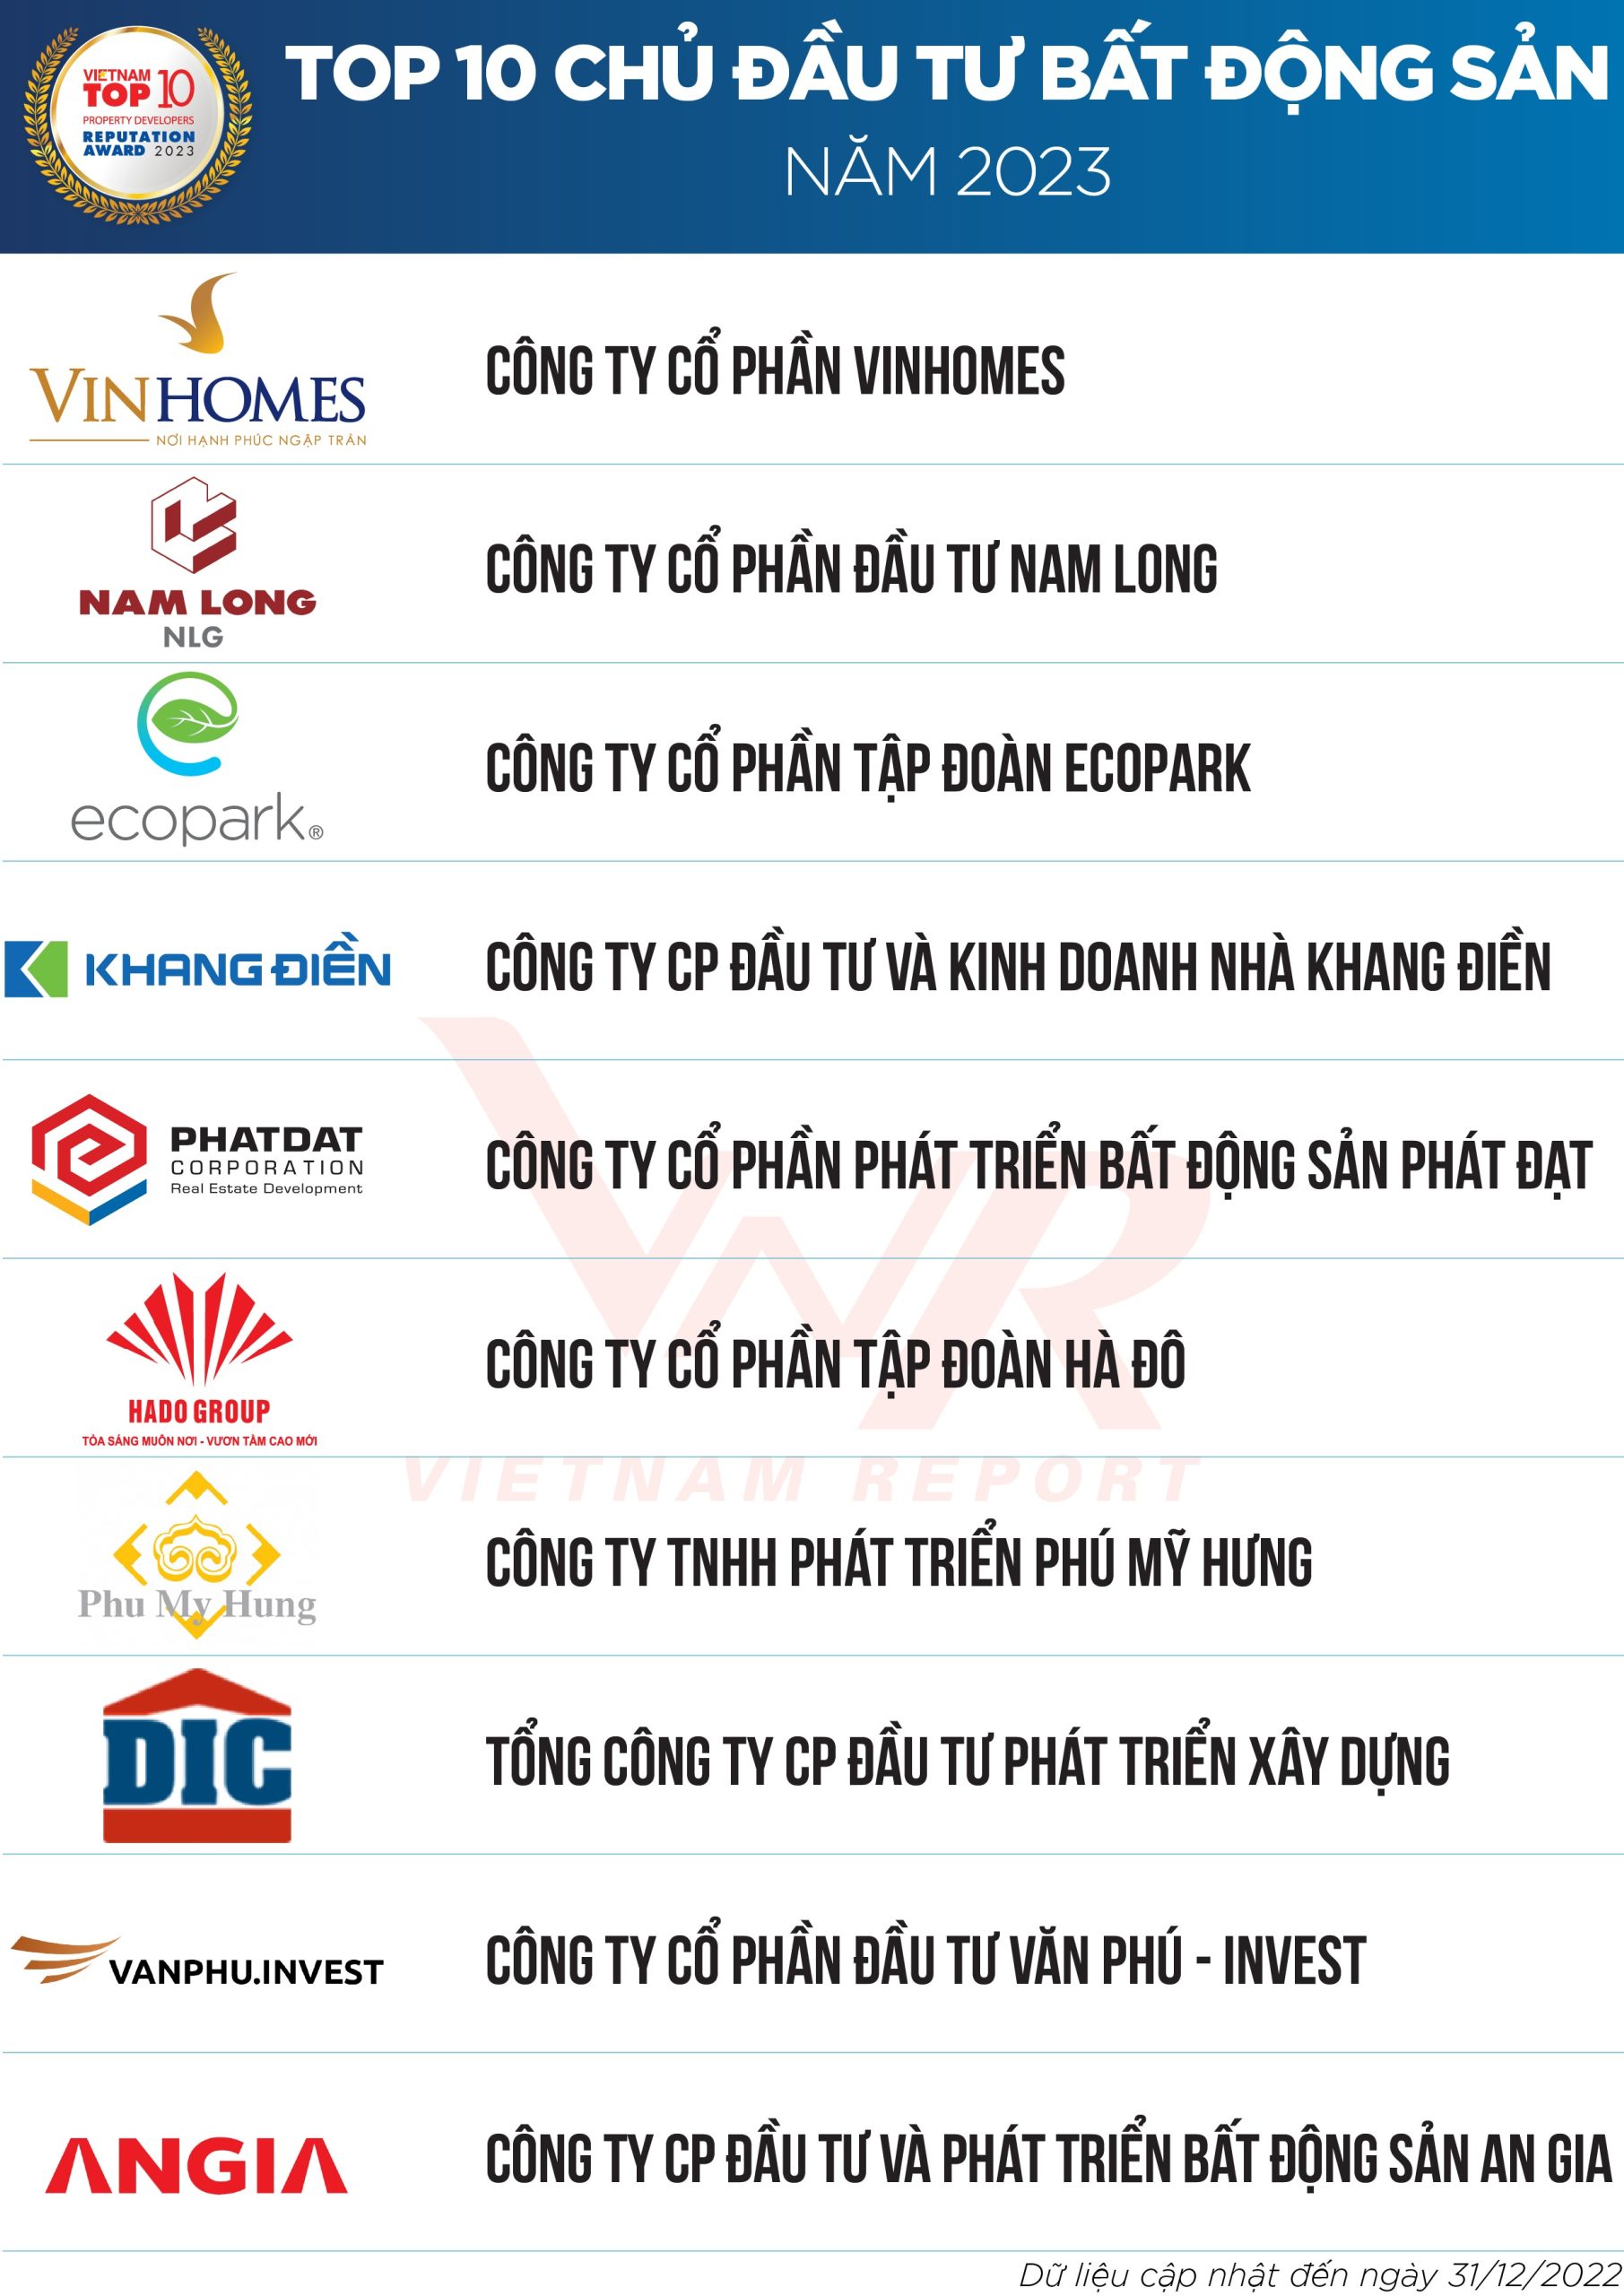 Top 10 công ty chủ đầu tư bất động sản uy tín nhất Việt Nam Nam Long Group